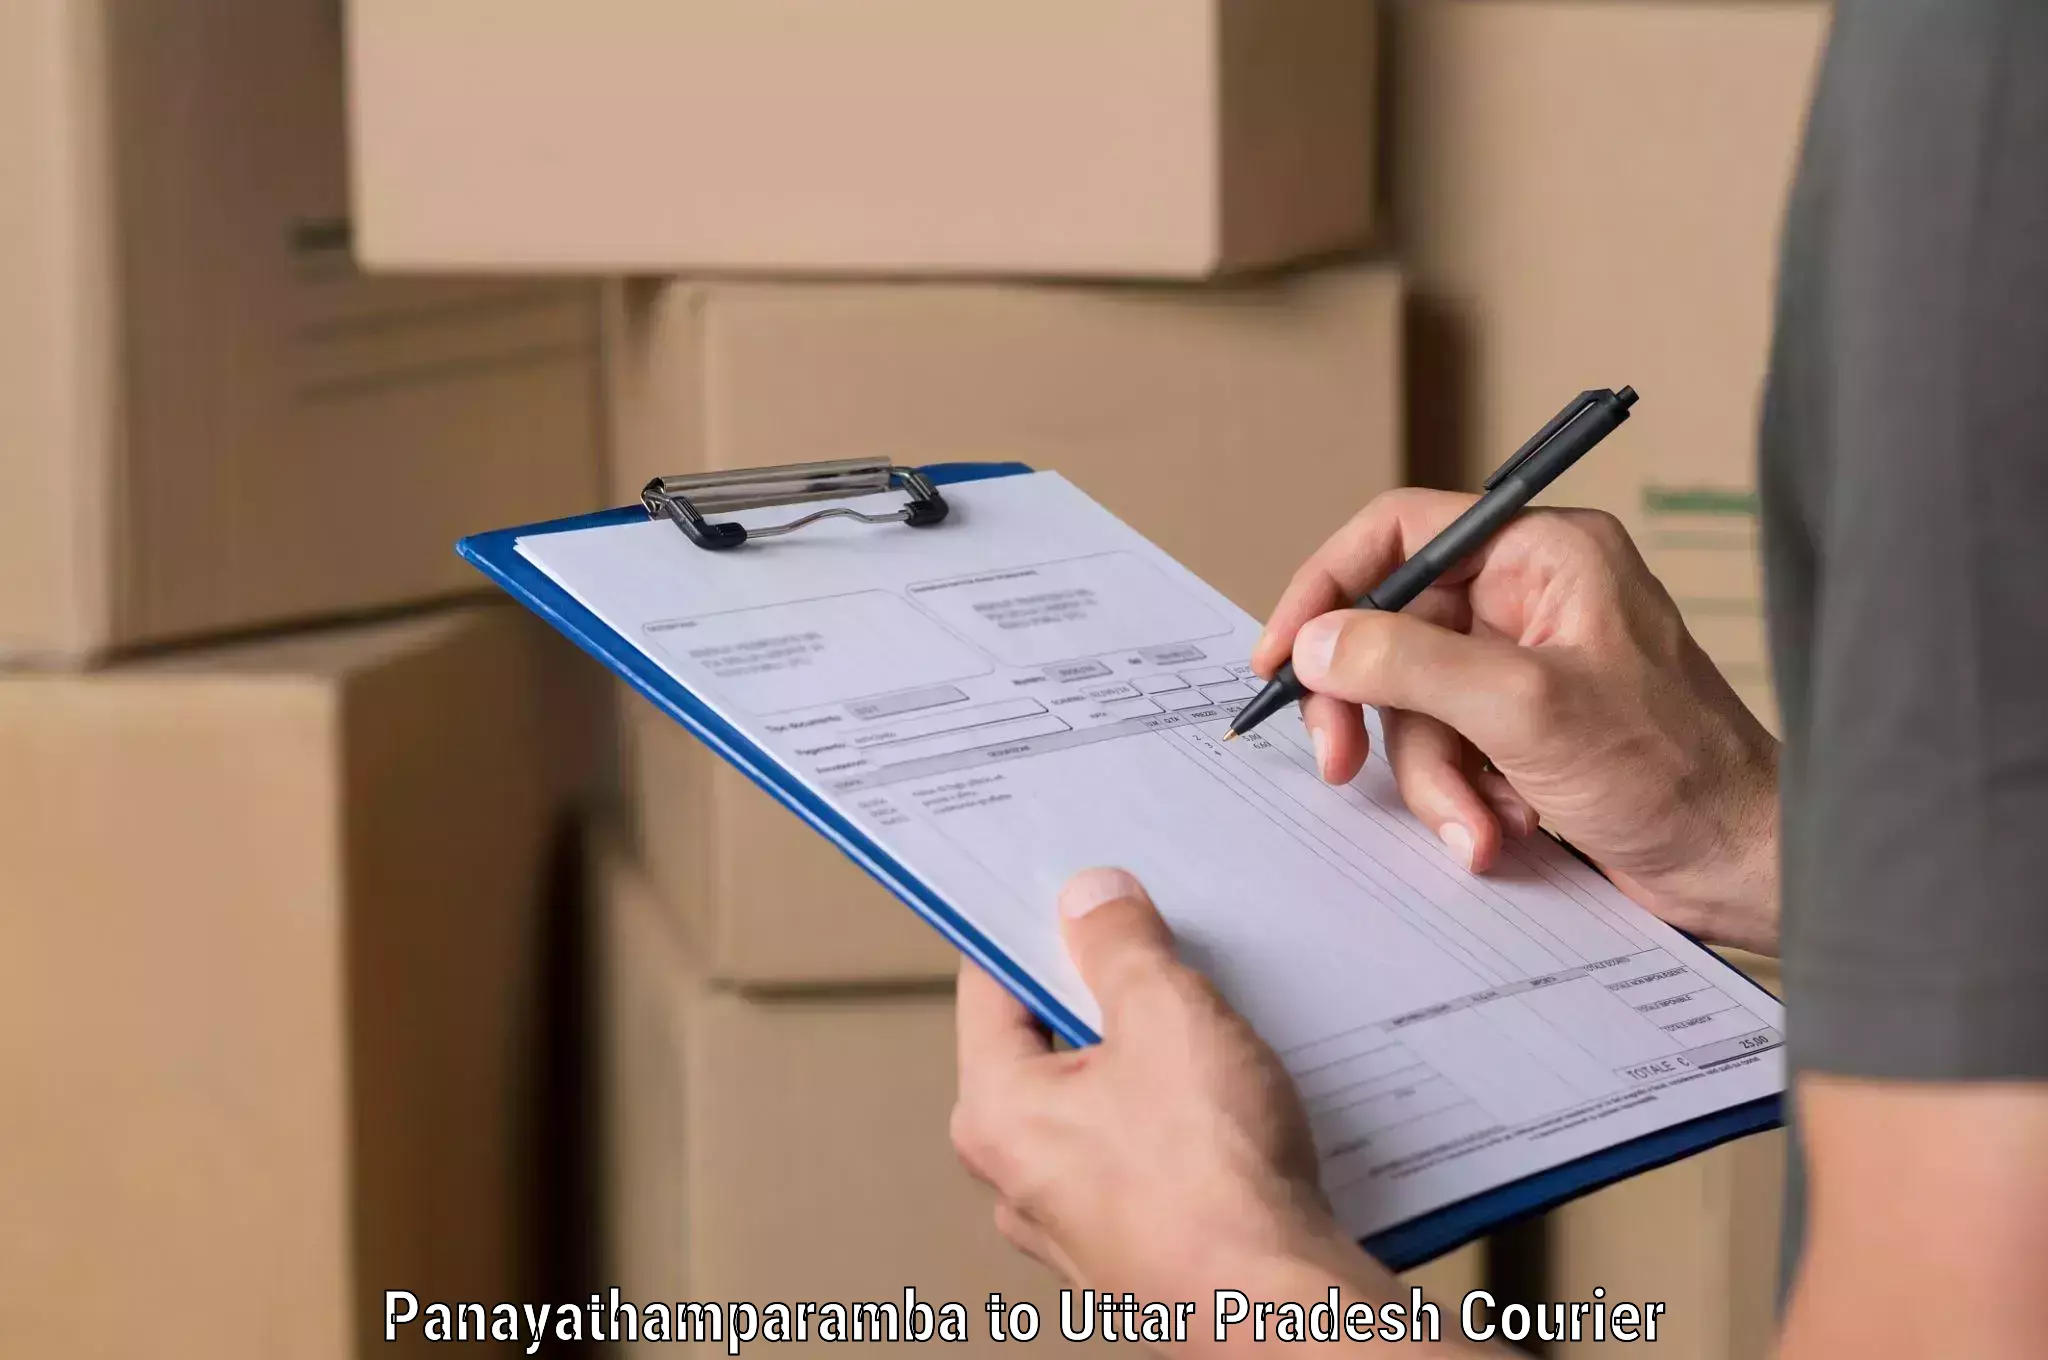 Courier service innovation Panayathamparamba to Chandauli